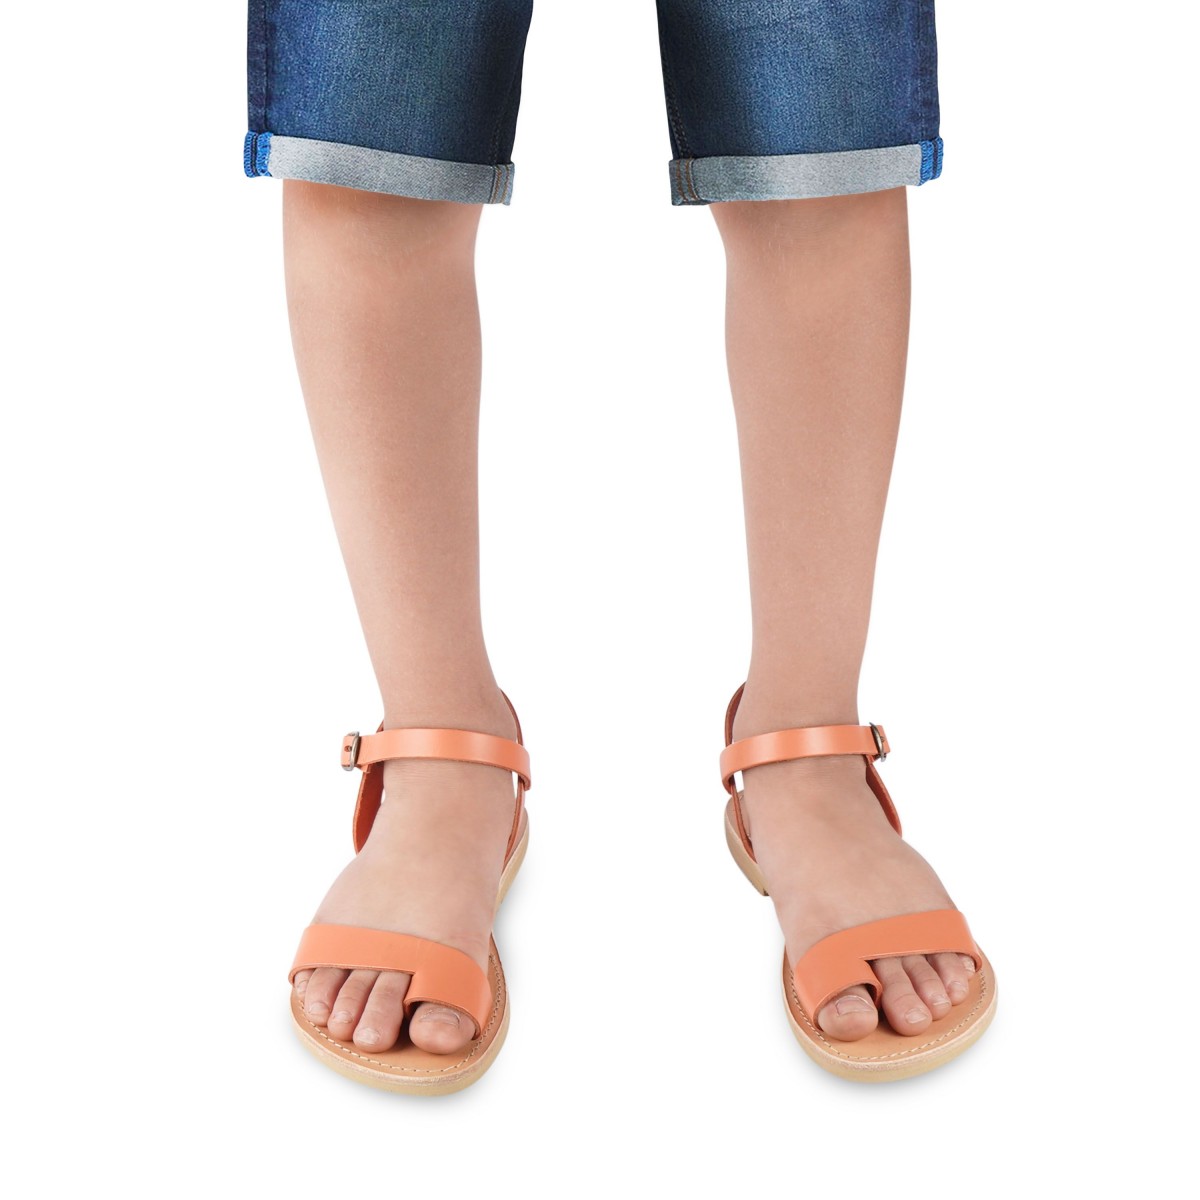 Sandalia para niño de piel de becerro naranja con cierre de hebilla Attica sandals Zapatos Zapatos para niño Sandalias 